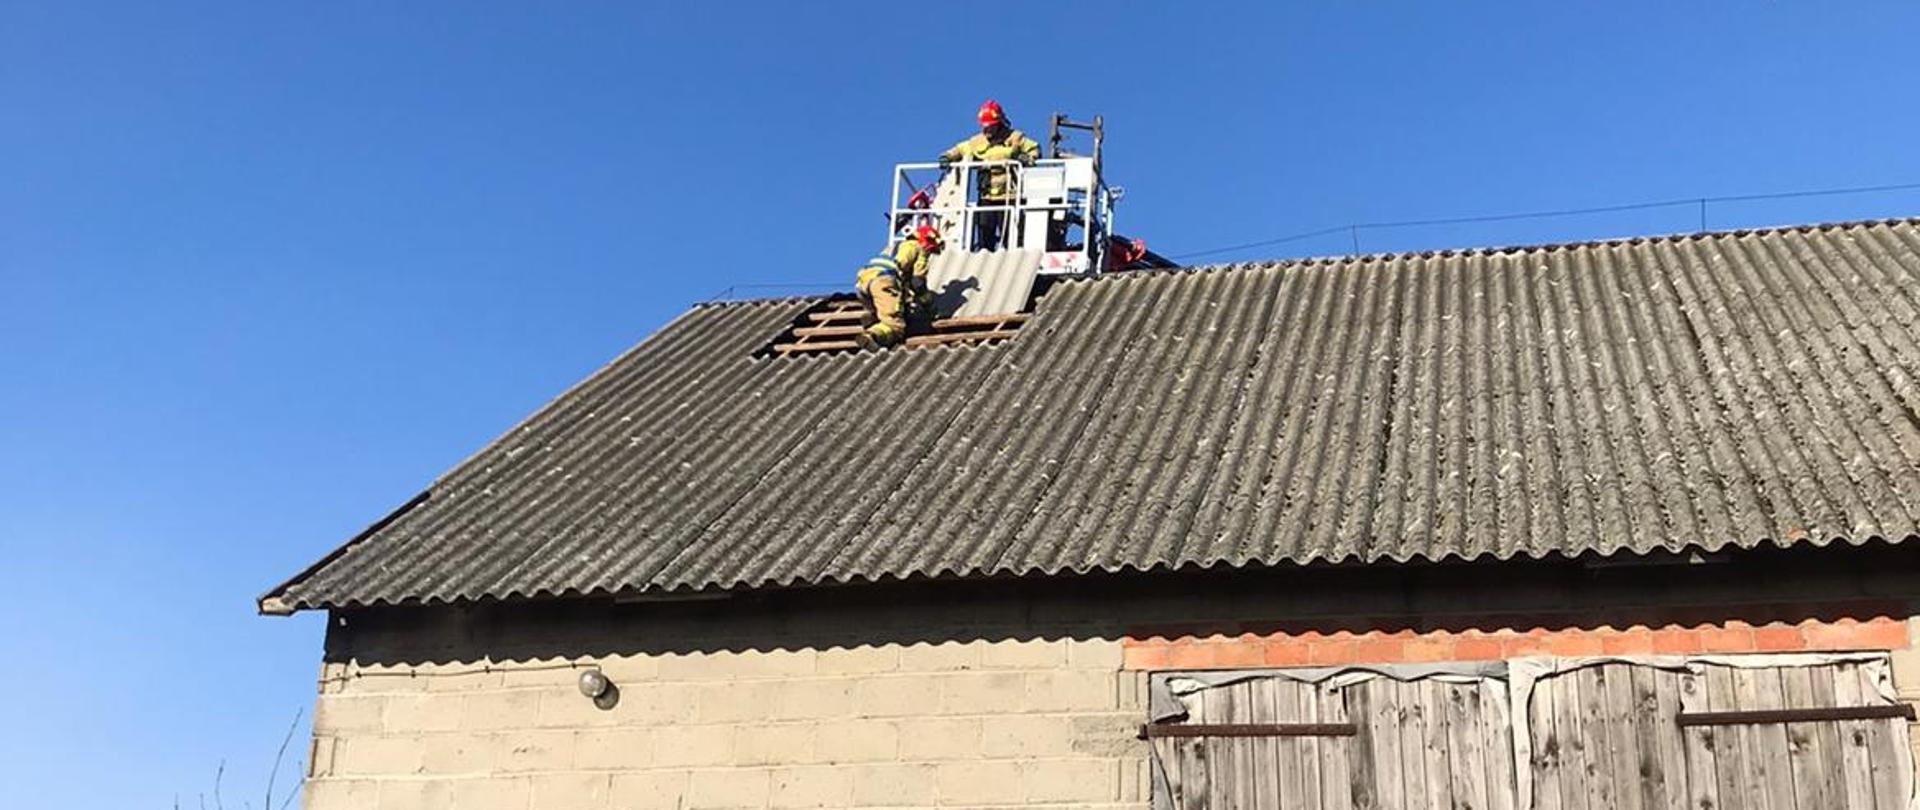 Trzej strażacy na dachy budynku gospodarczego szykują się do zakrycia dziury w dachu , w którym wiatr wyrwał kilka płyt eternitu